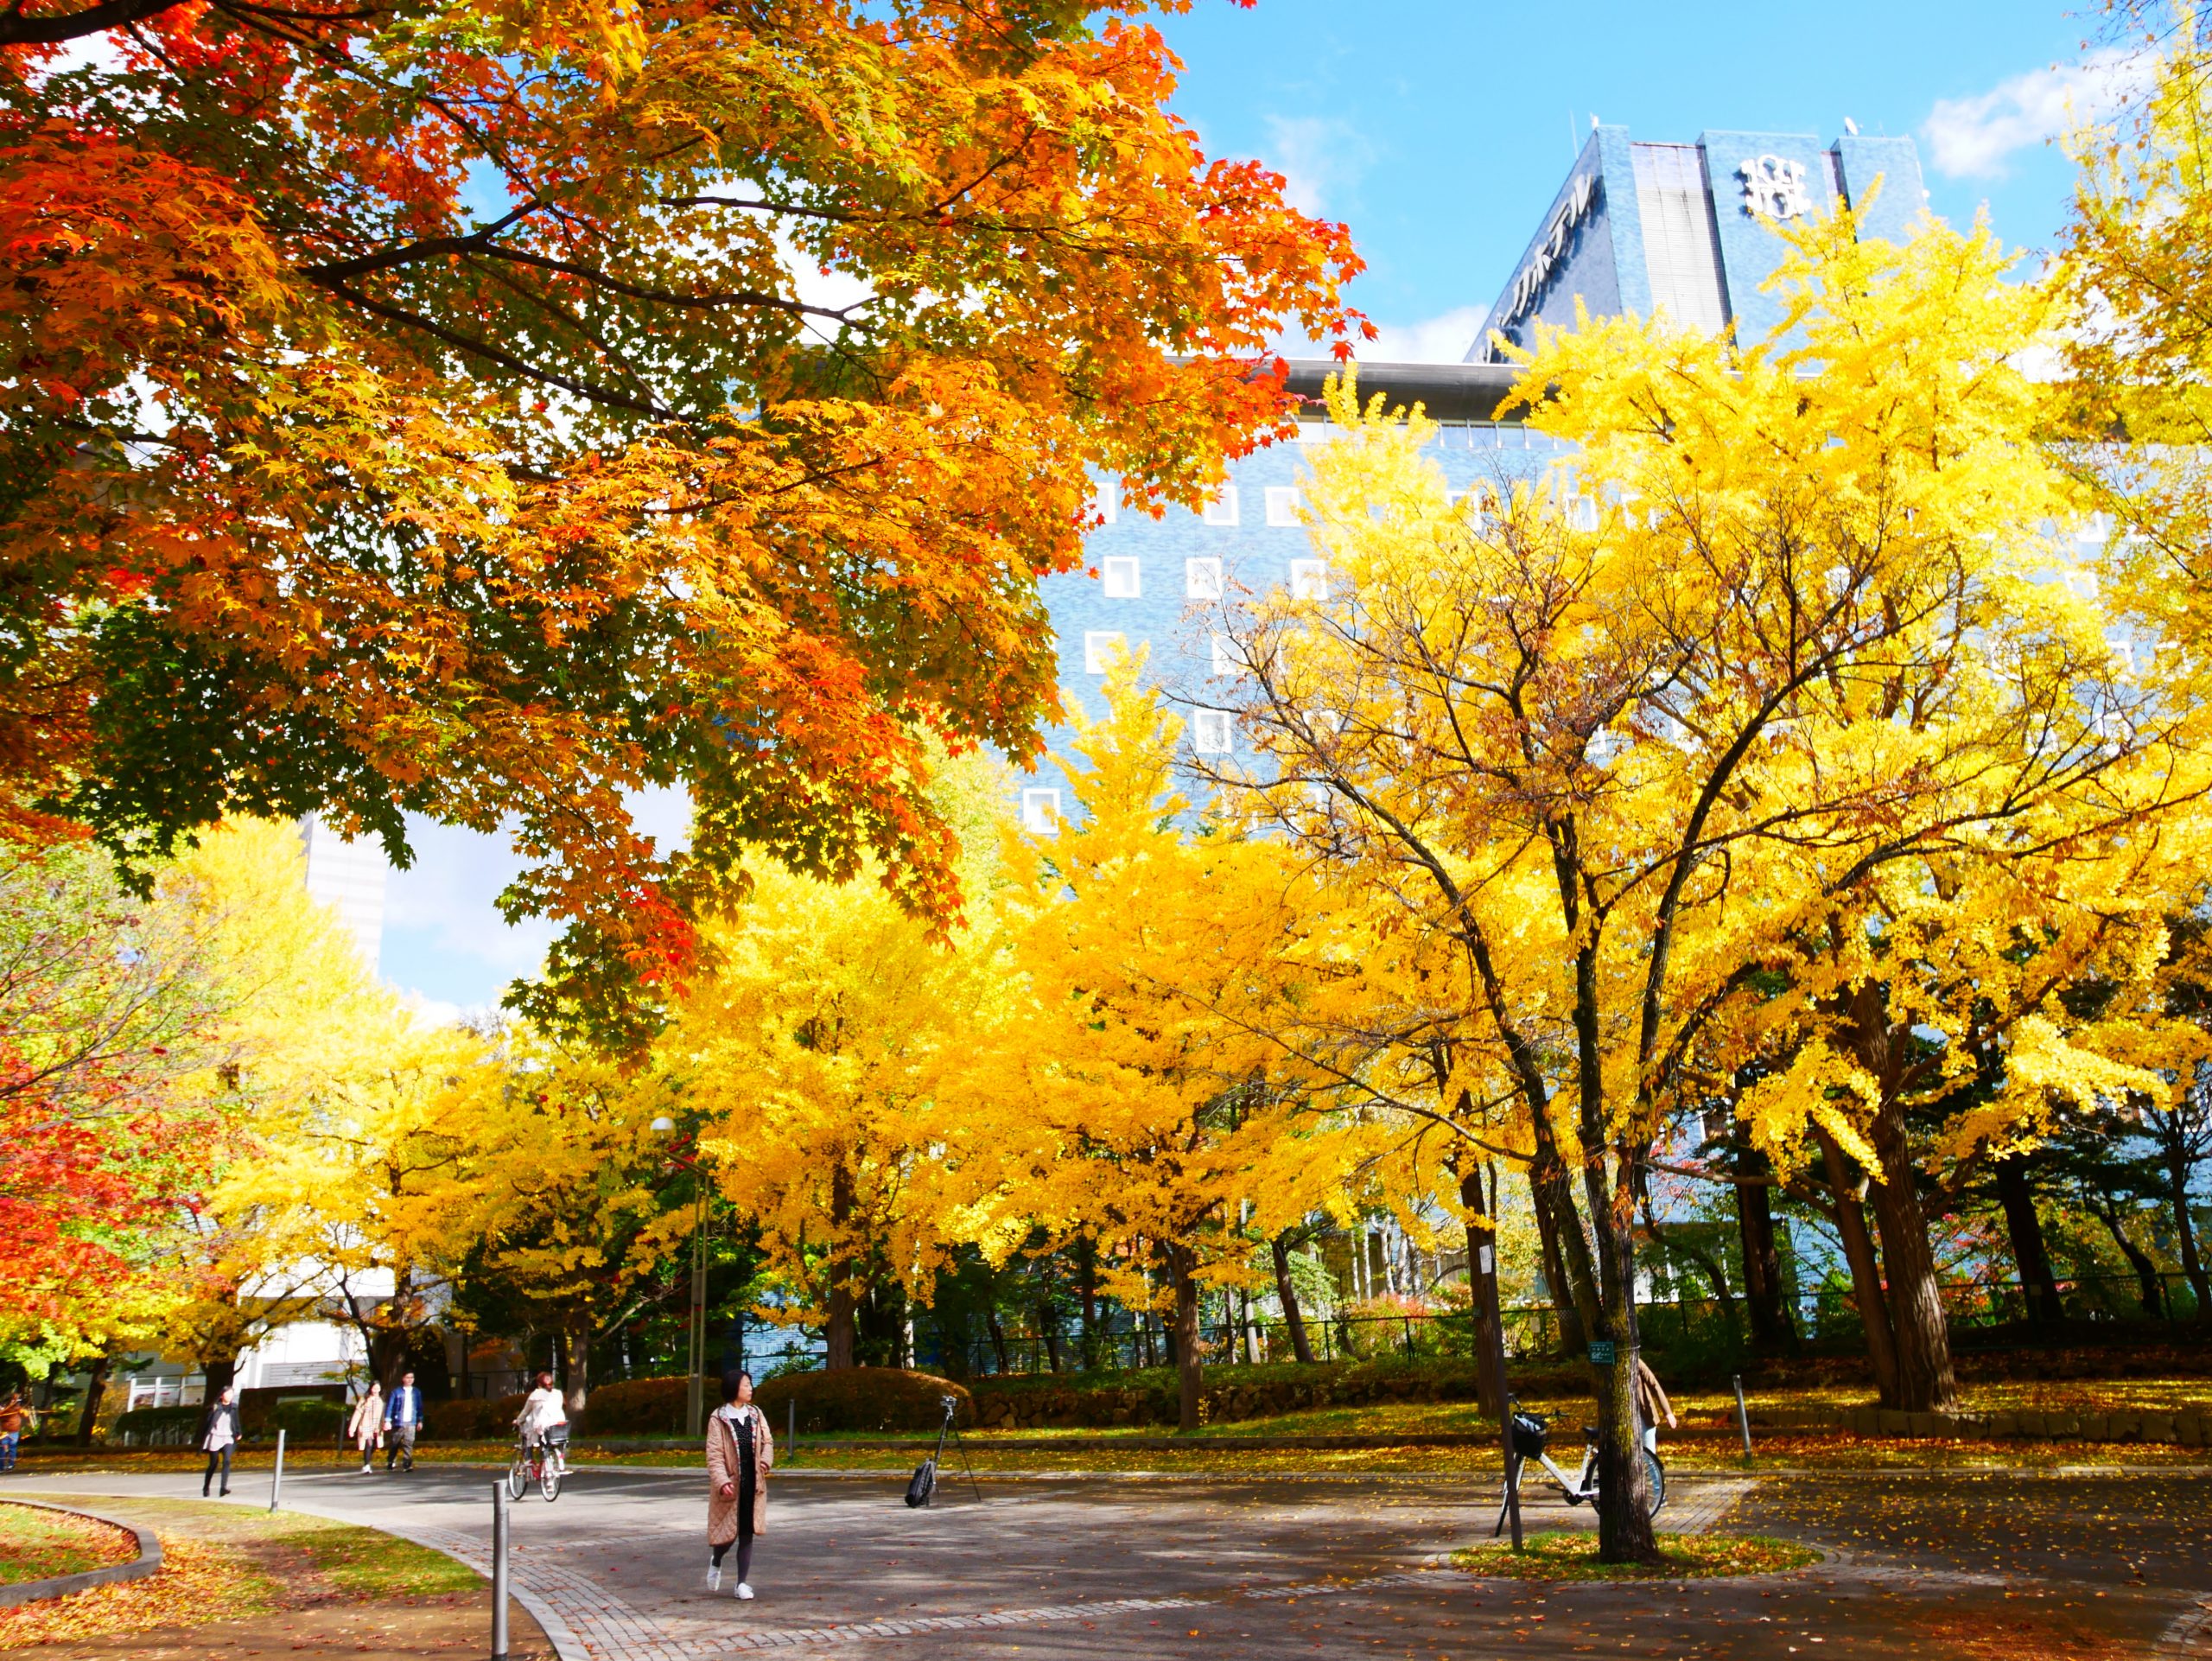 延伸閱讀：【日本】   北海道 札幌市區中的紅葉名所 中島公園 |  秋意濃 ，滿園的紅、黃、橘色的楓樹、銀杏等各種變葉木，妝點出如織錦般的美麗景色，讓人驚艷。